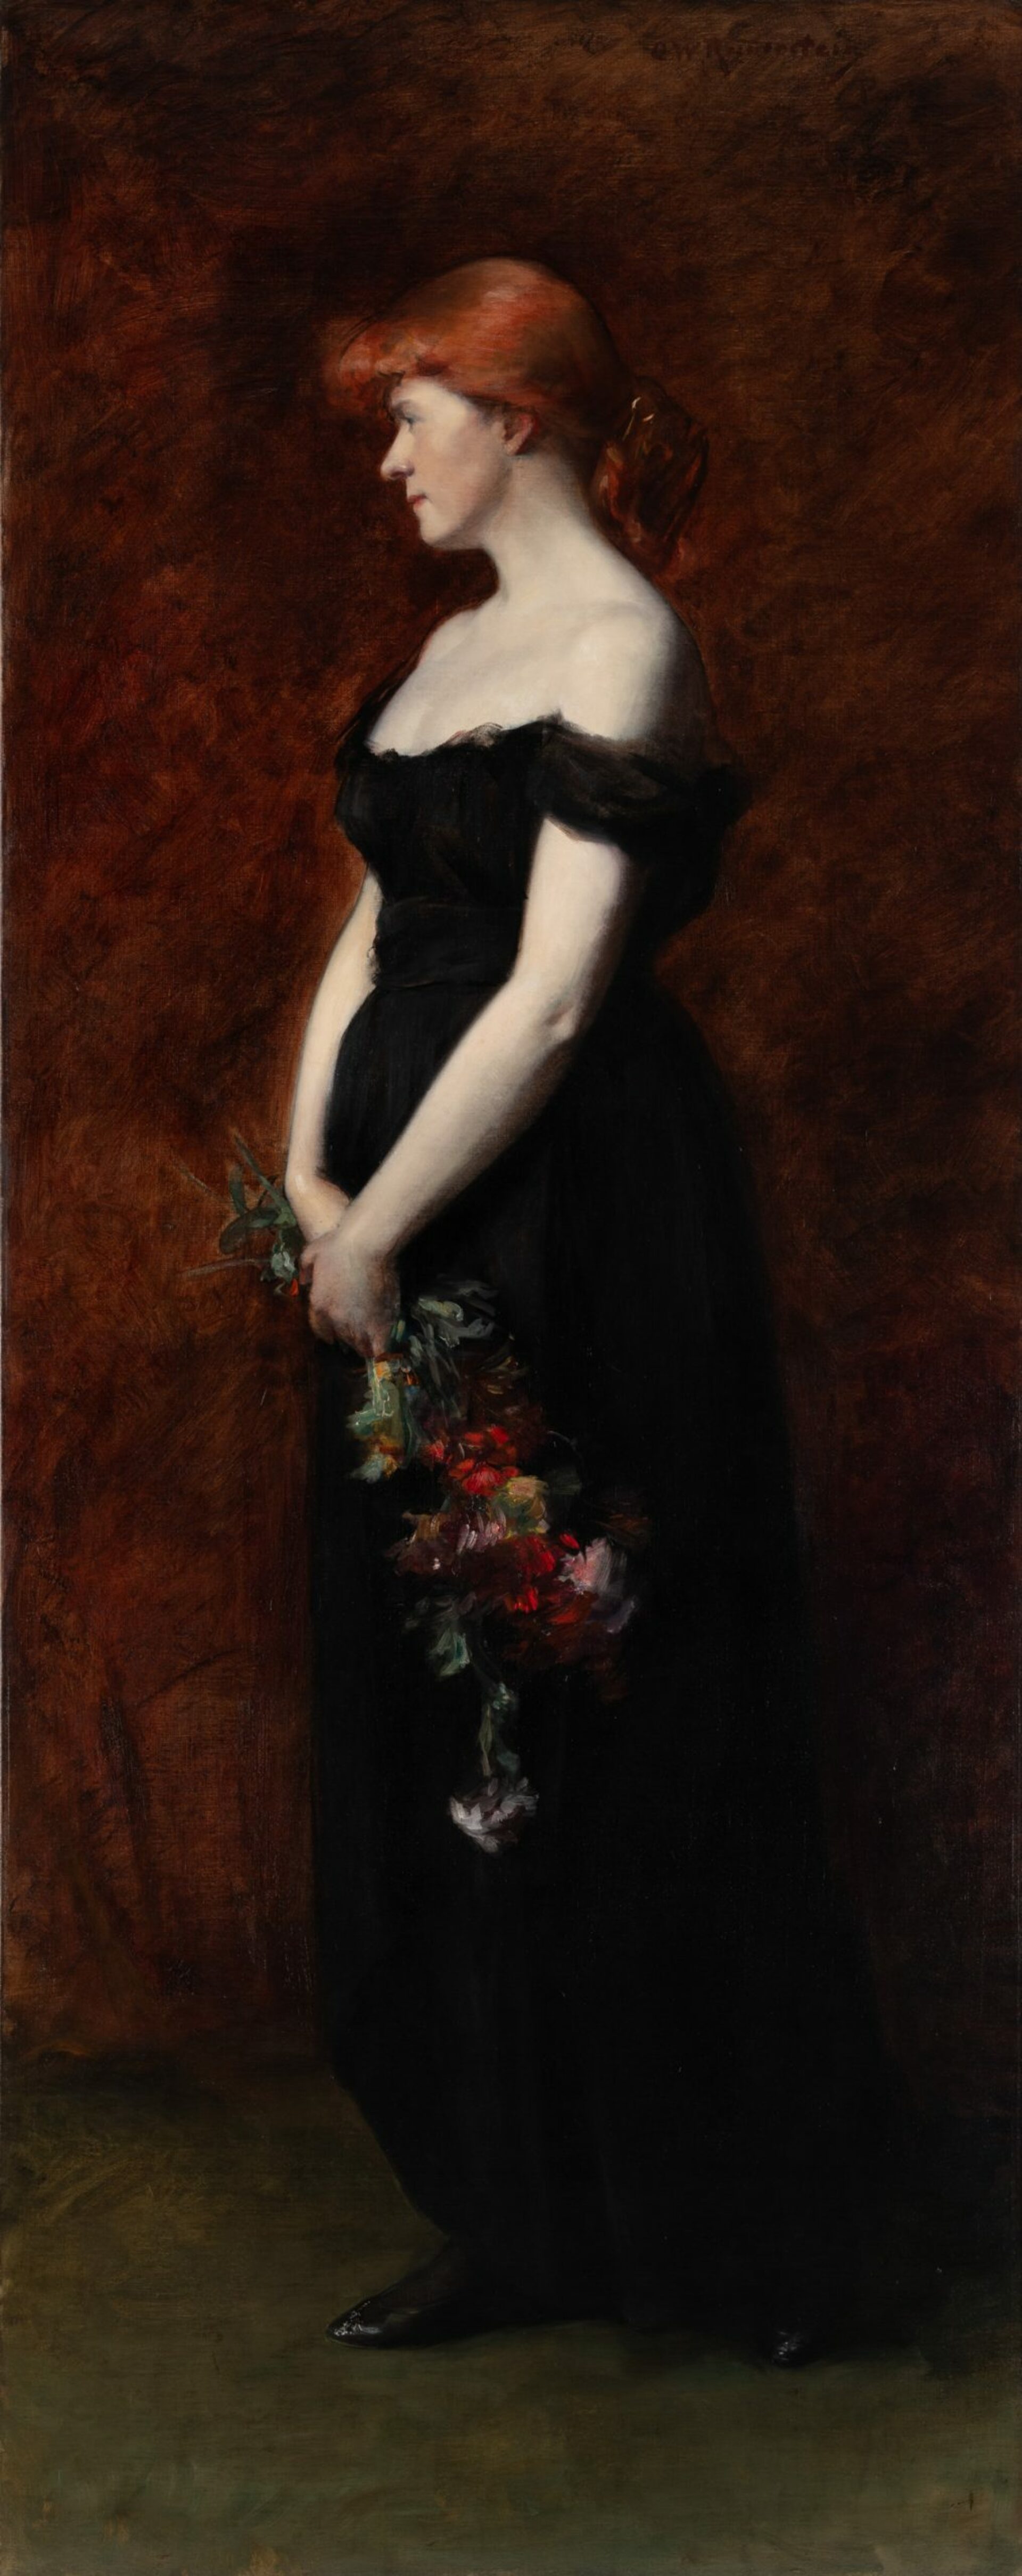 Ottilie W. Roederstein, Miss Mosher oder Sommerneige (Fin d’été), um 1887, Öl auf Leinwand, 201 x 80 cm, Privatbesitz, Foto Städel Museum, Frankfurt am Main